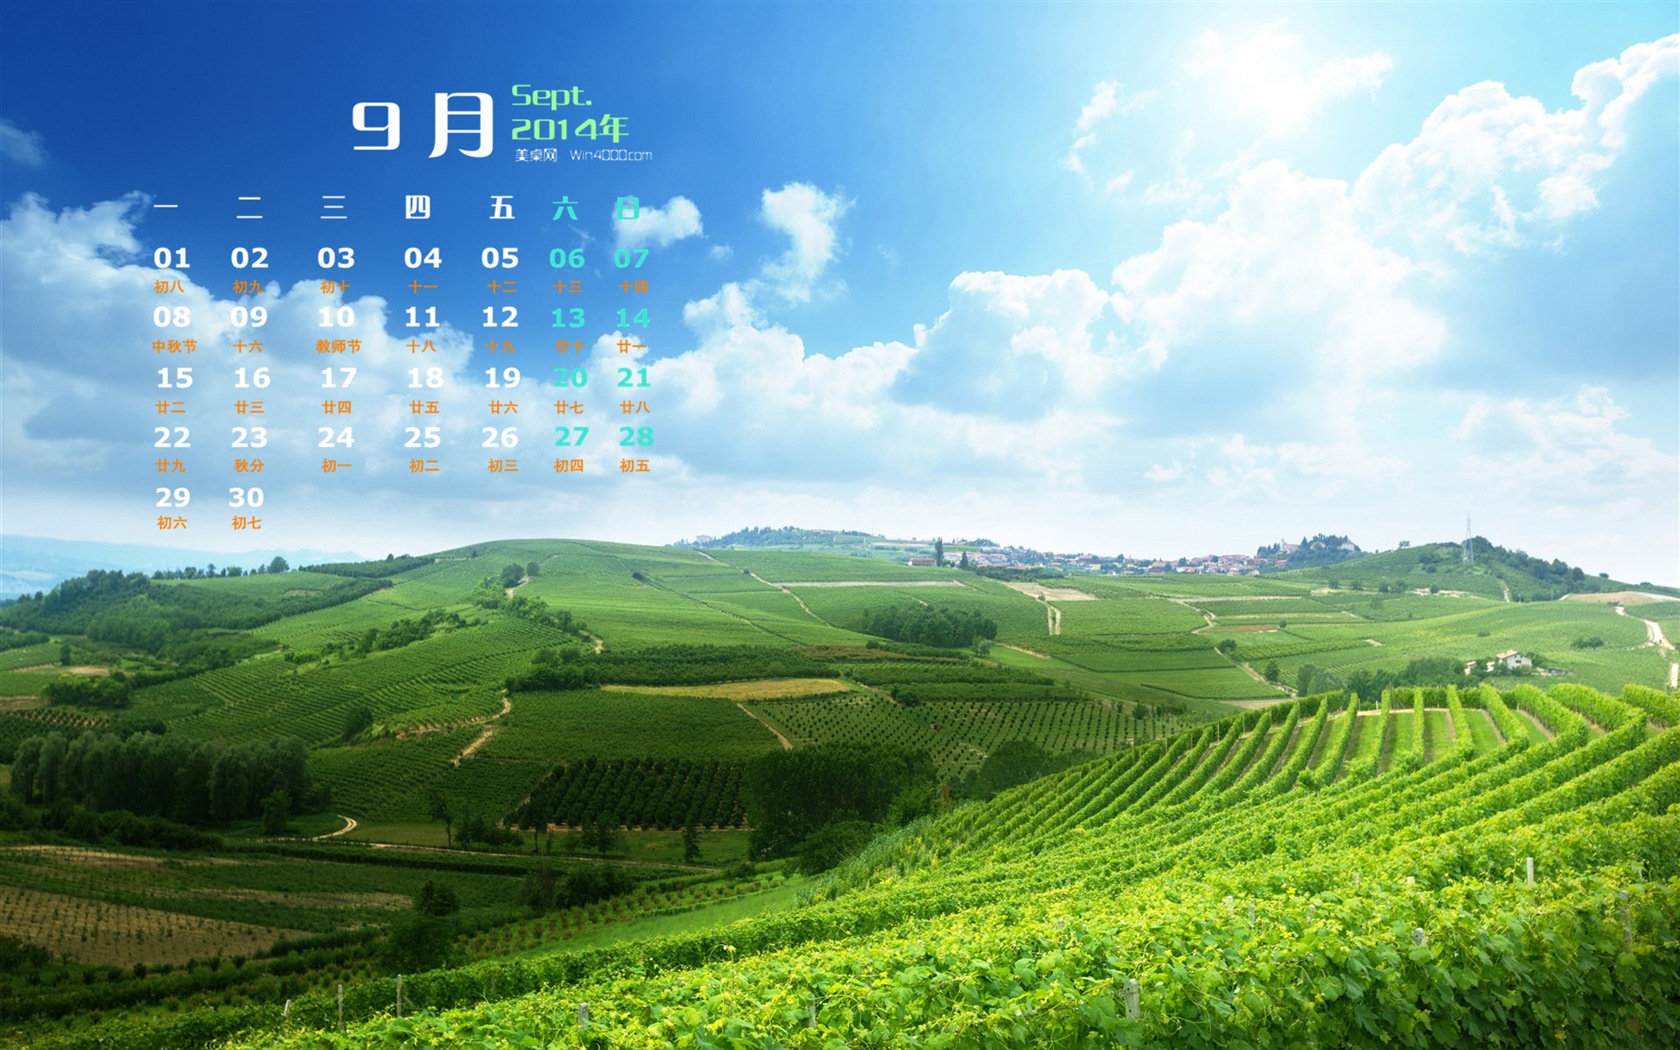 09 2014 wallpaper Calendario (2) #8 - 1680x1050